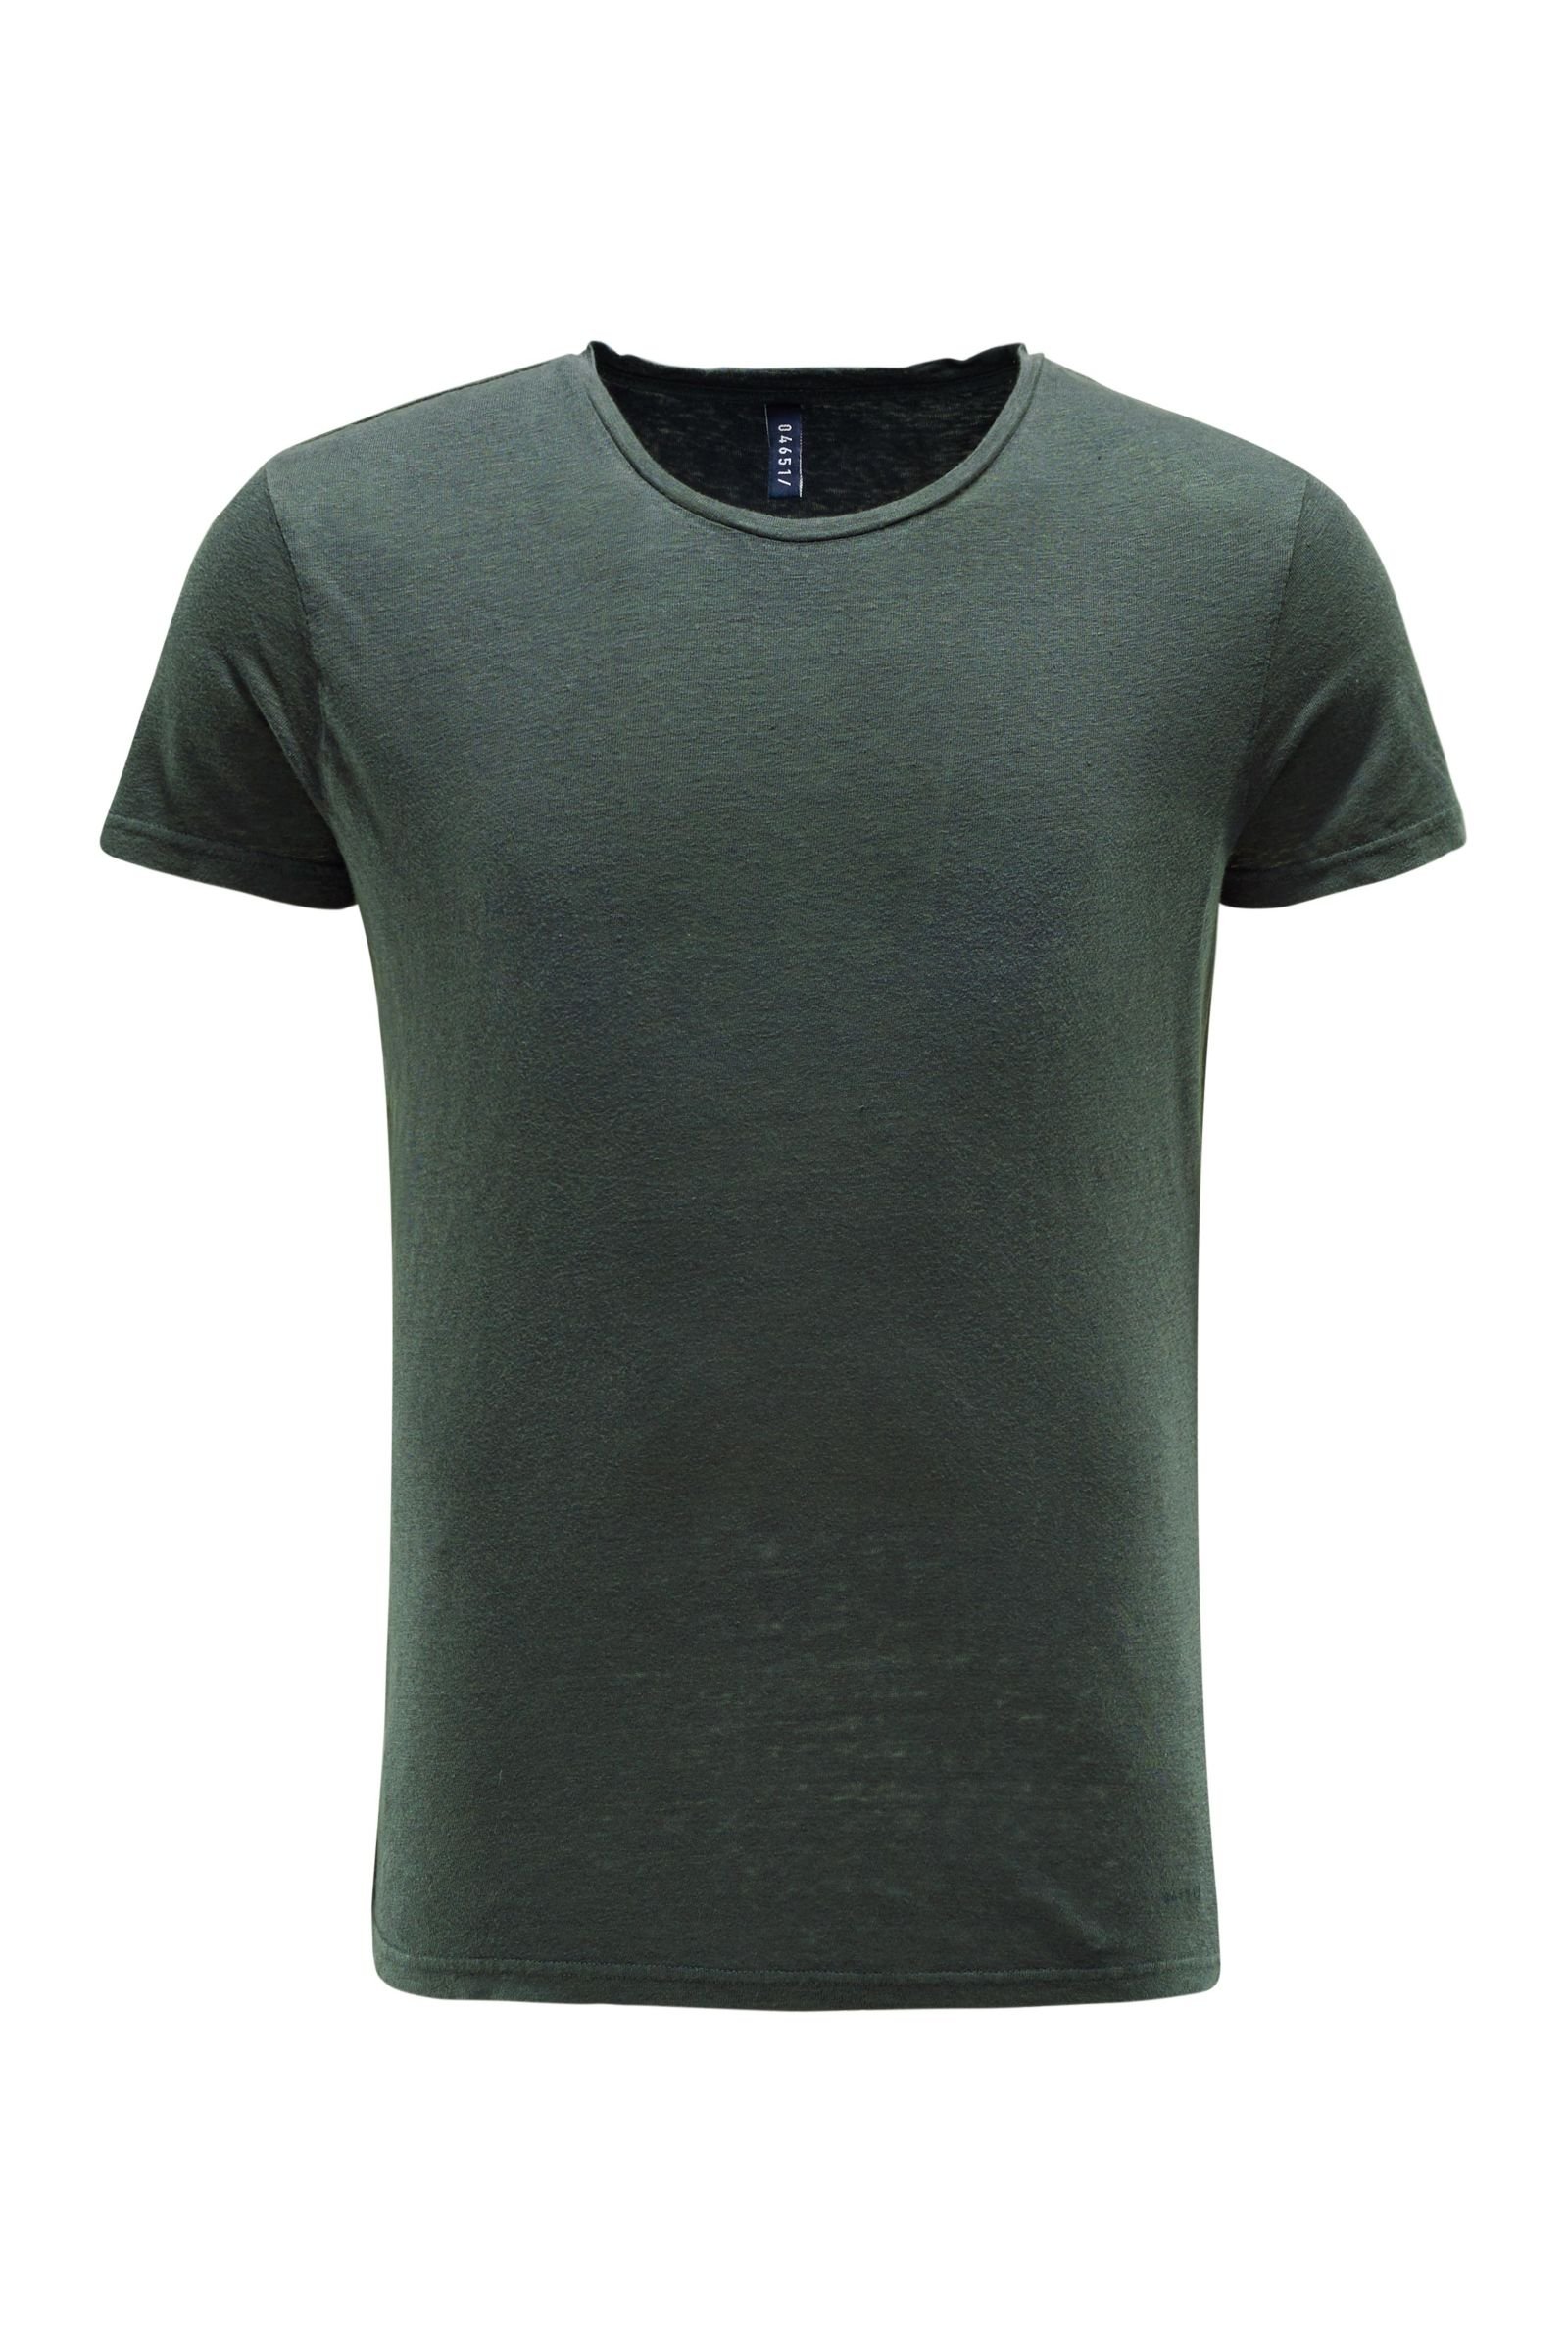 Linen crew neck T-shirt dark green